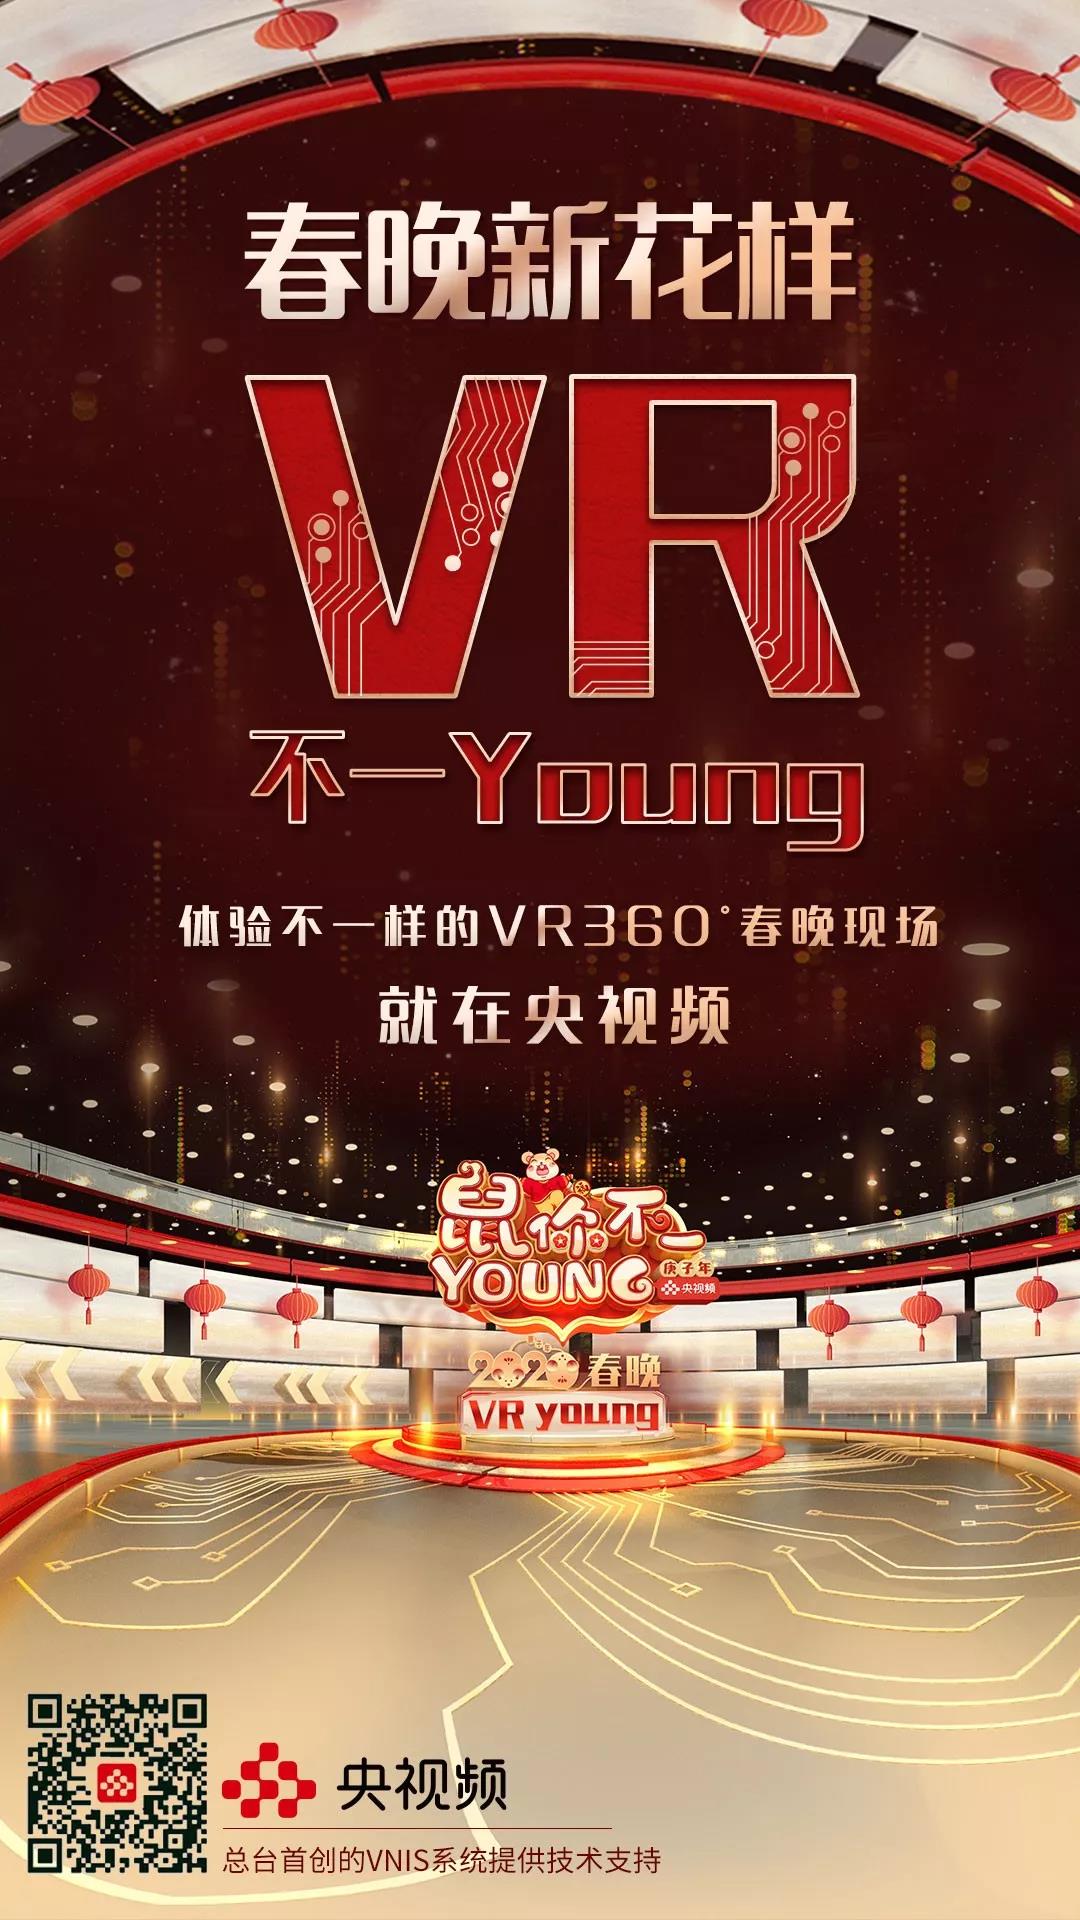 《2020年春节联欢晚会》首次VR直播 重新定义身临其境